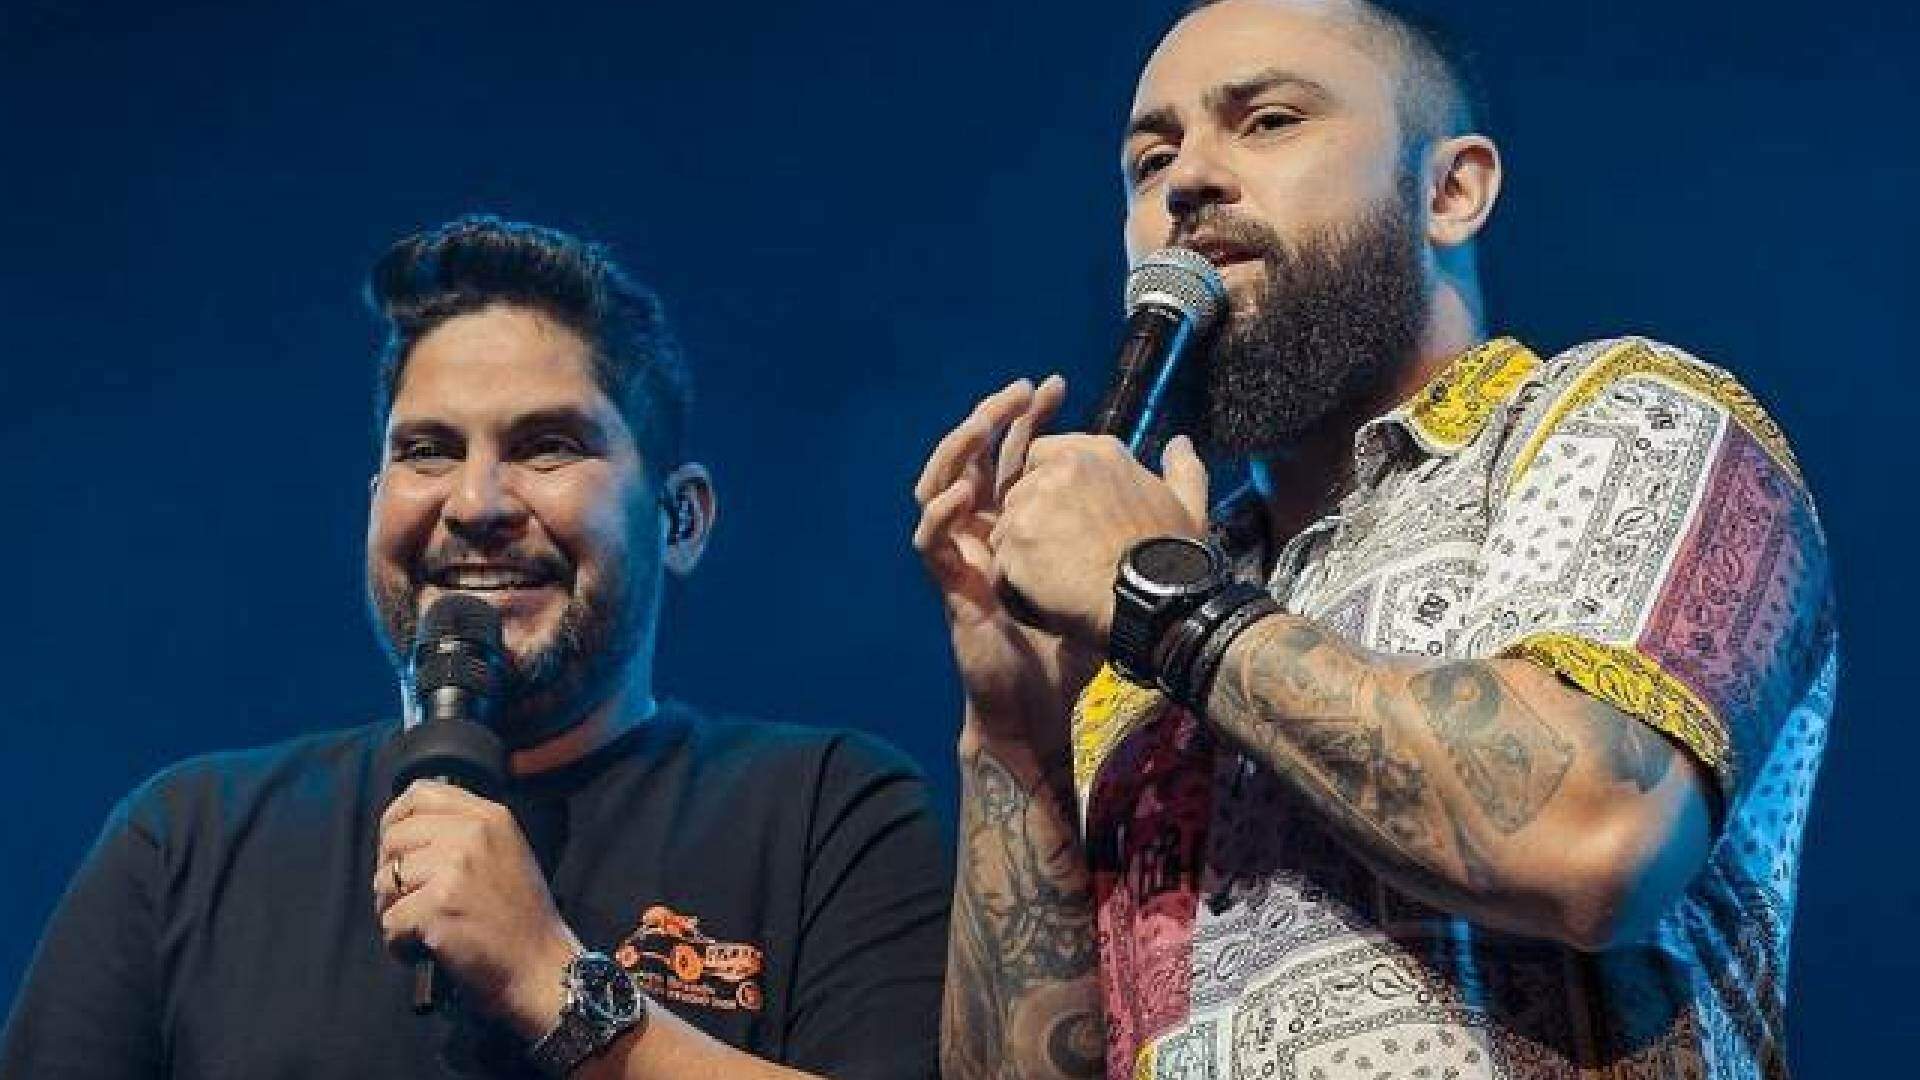 Vai acabar? Em entrevista, Jorge e Mateus abrem o jogo e esclarecem futuro da dupla - Metropolitana FM